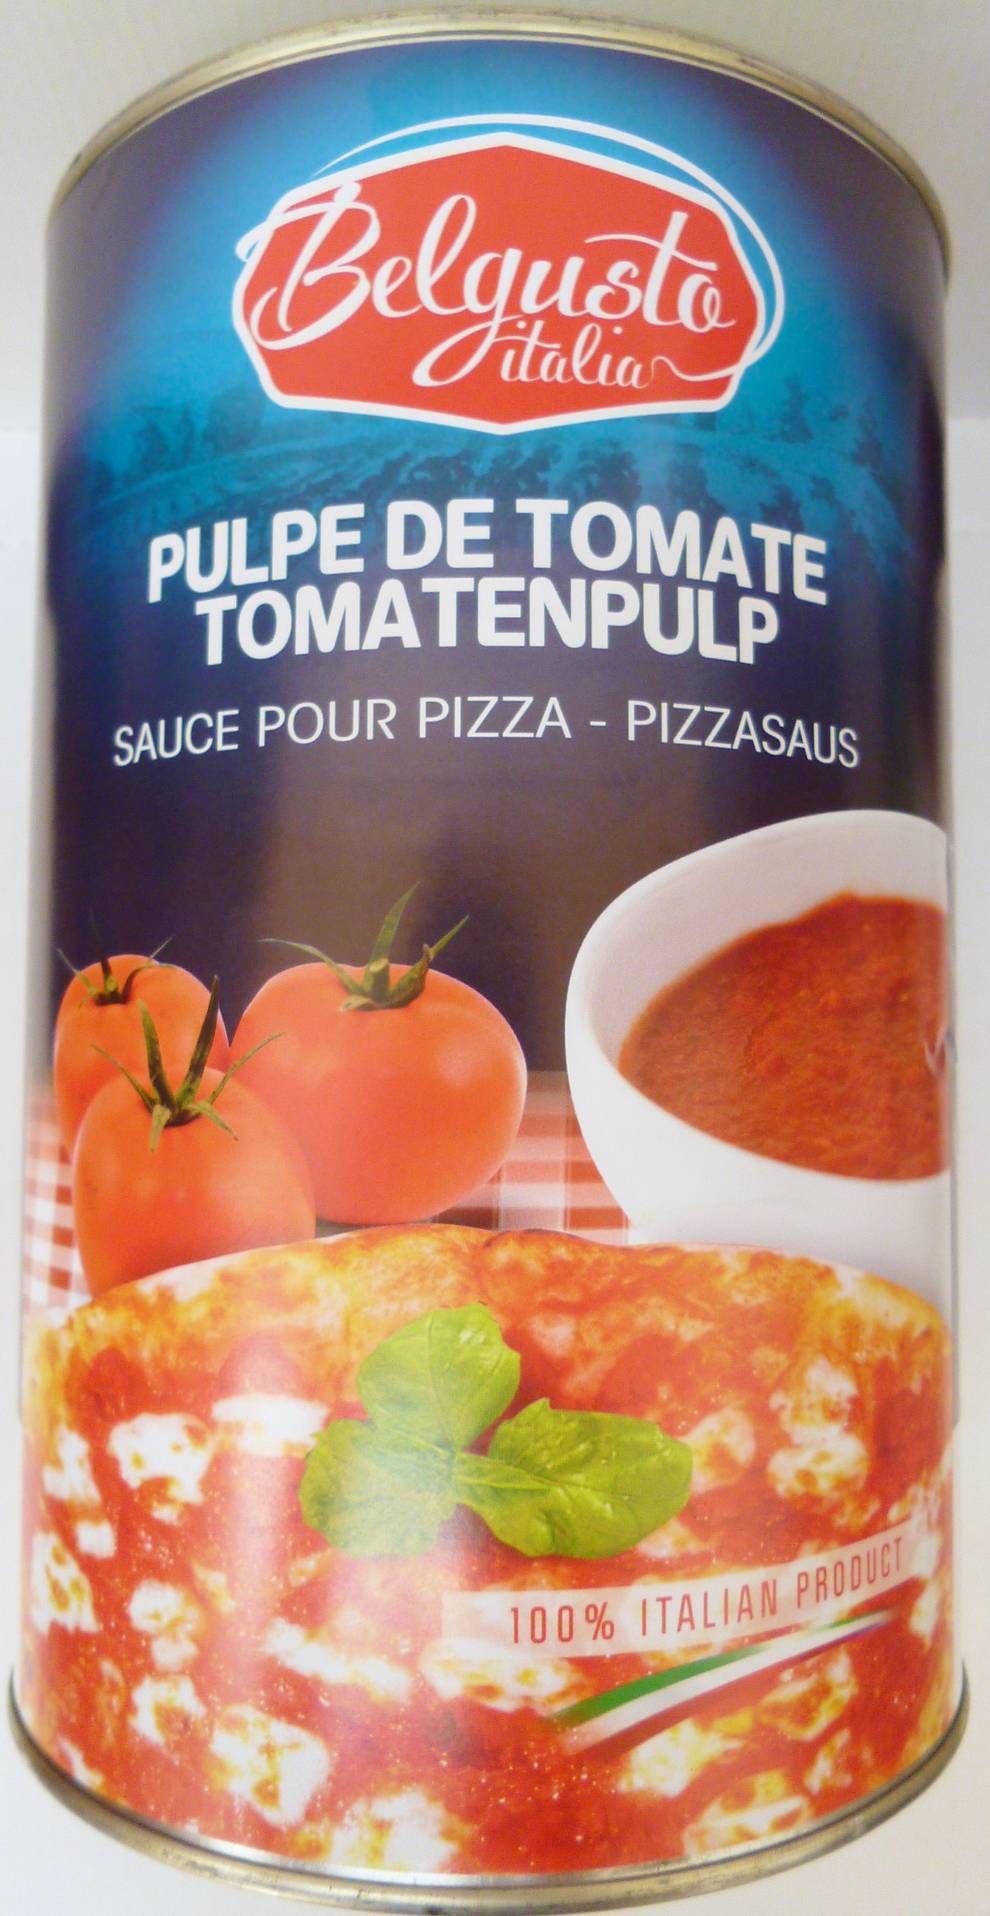 Drvené paradajky polpa  4,3kg plechovka BELGUSTO